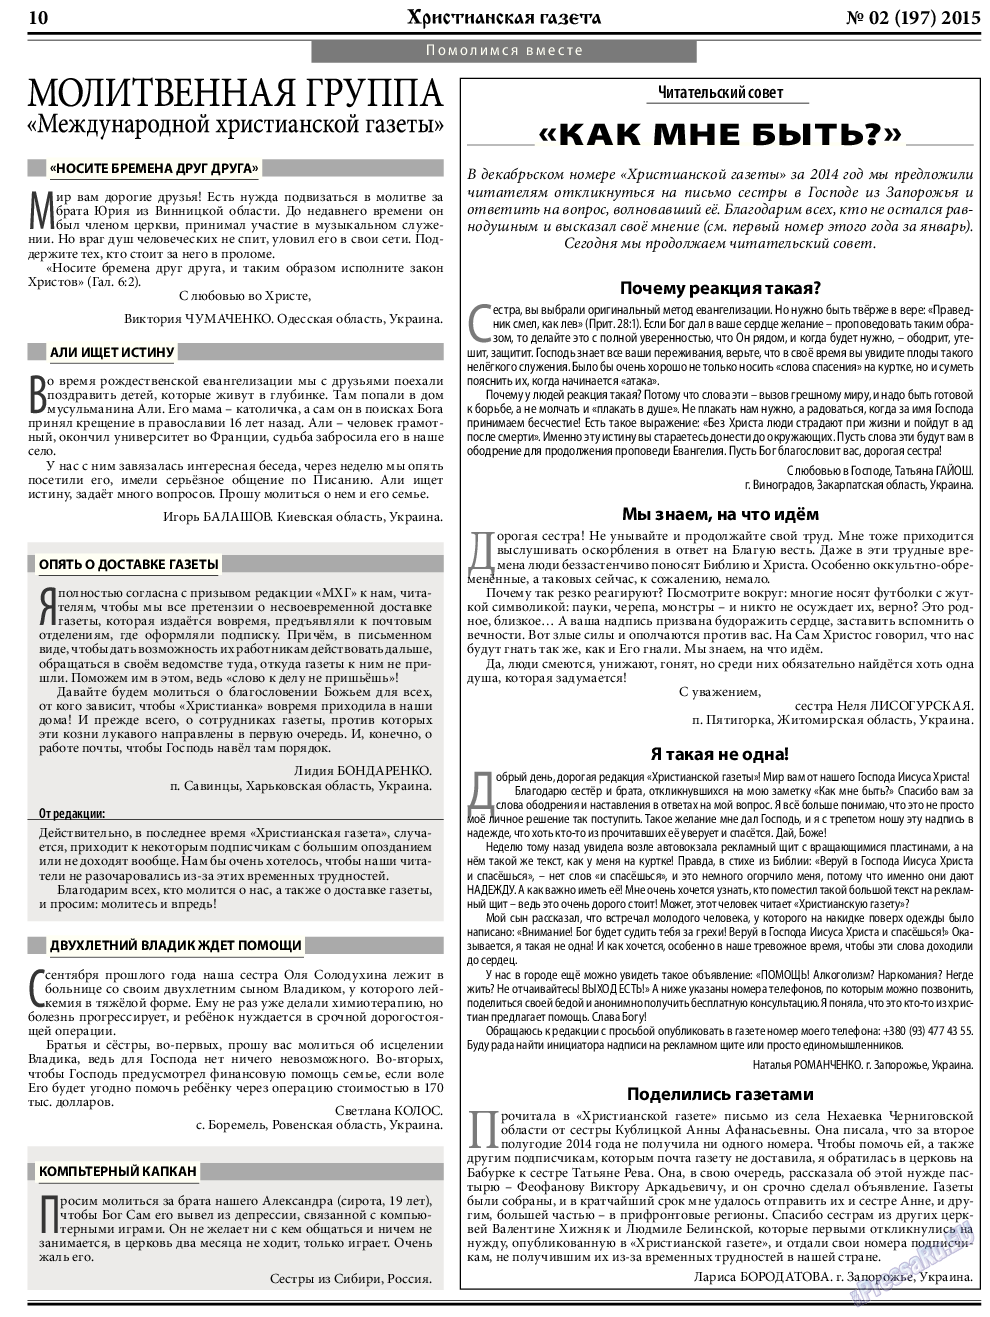 Христианская газета, газета. 2015 №2 стр.10